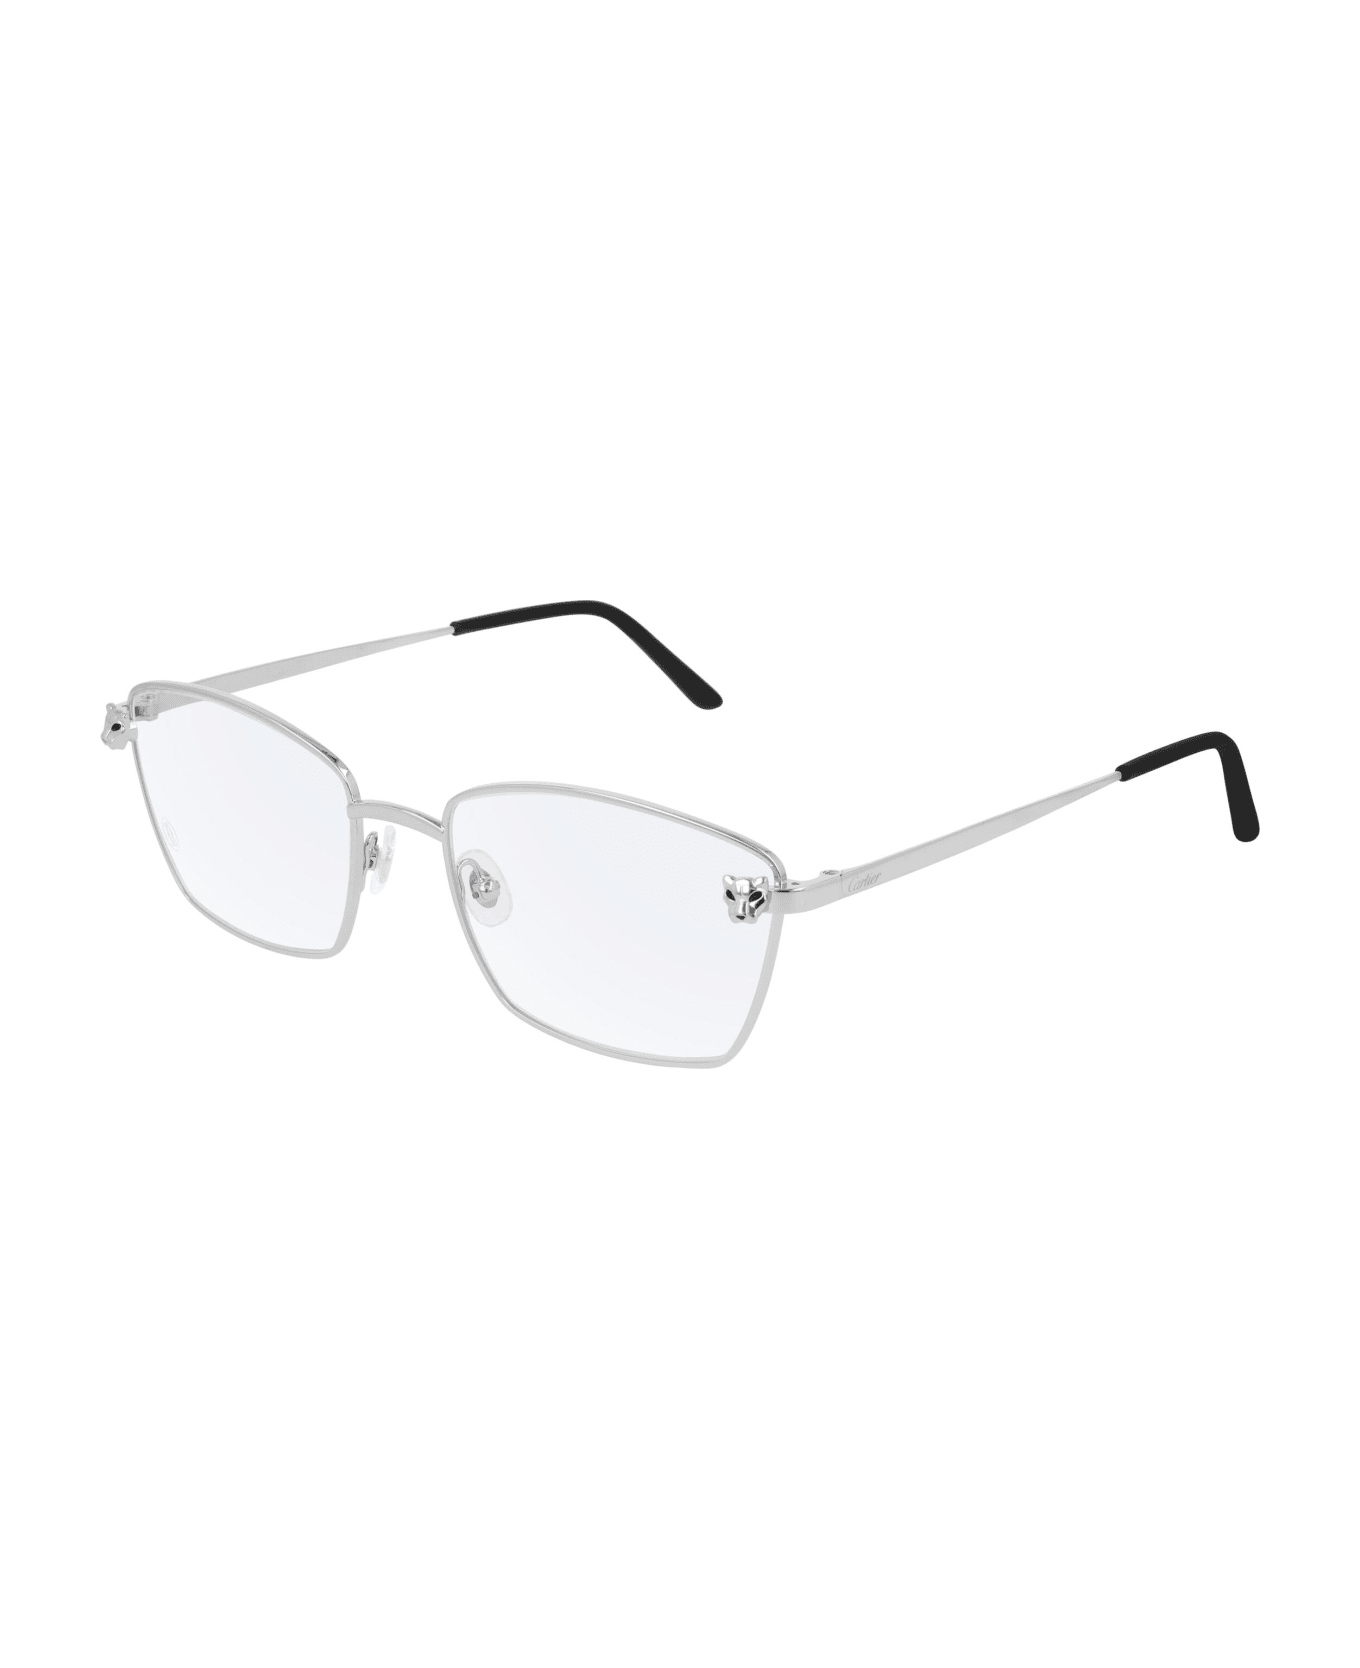 Cartier Eyewear Glasses - Argento アイウェア